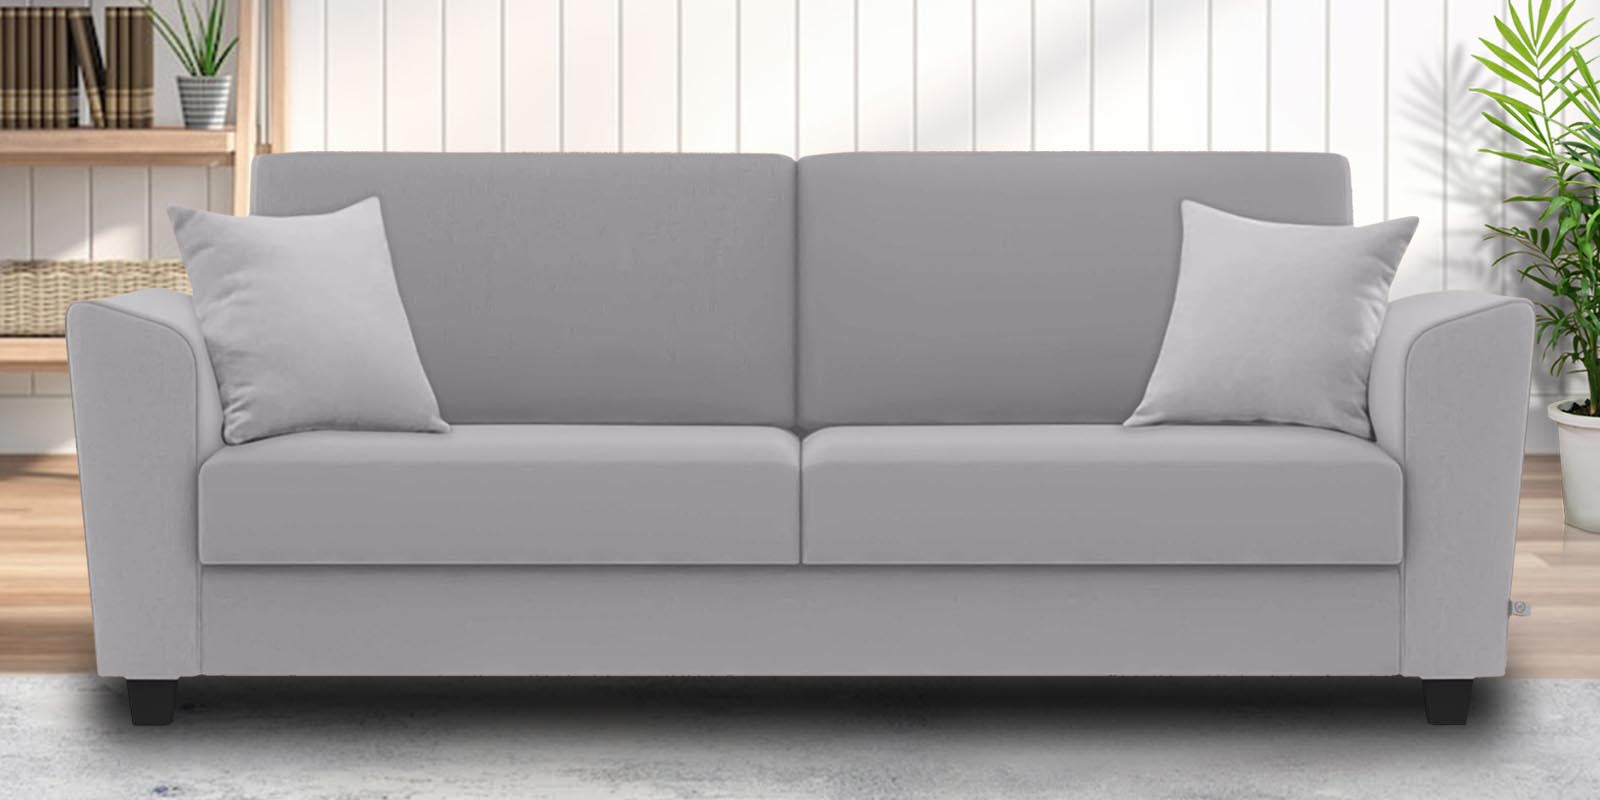 Daku Fabric 3 Seater Sofa in Lit Grey Colour